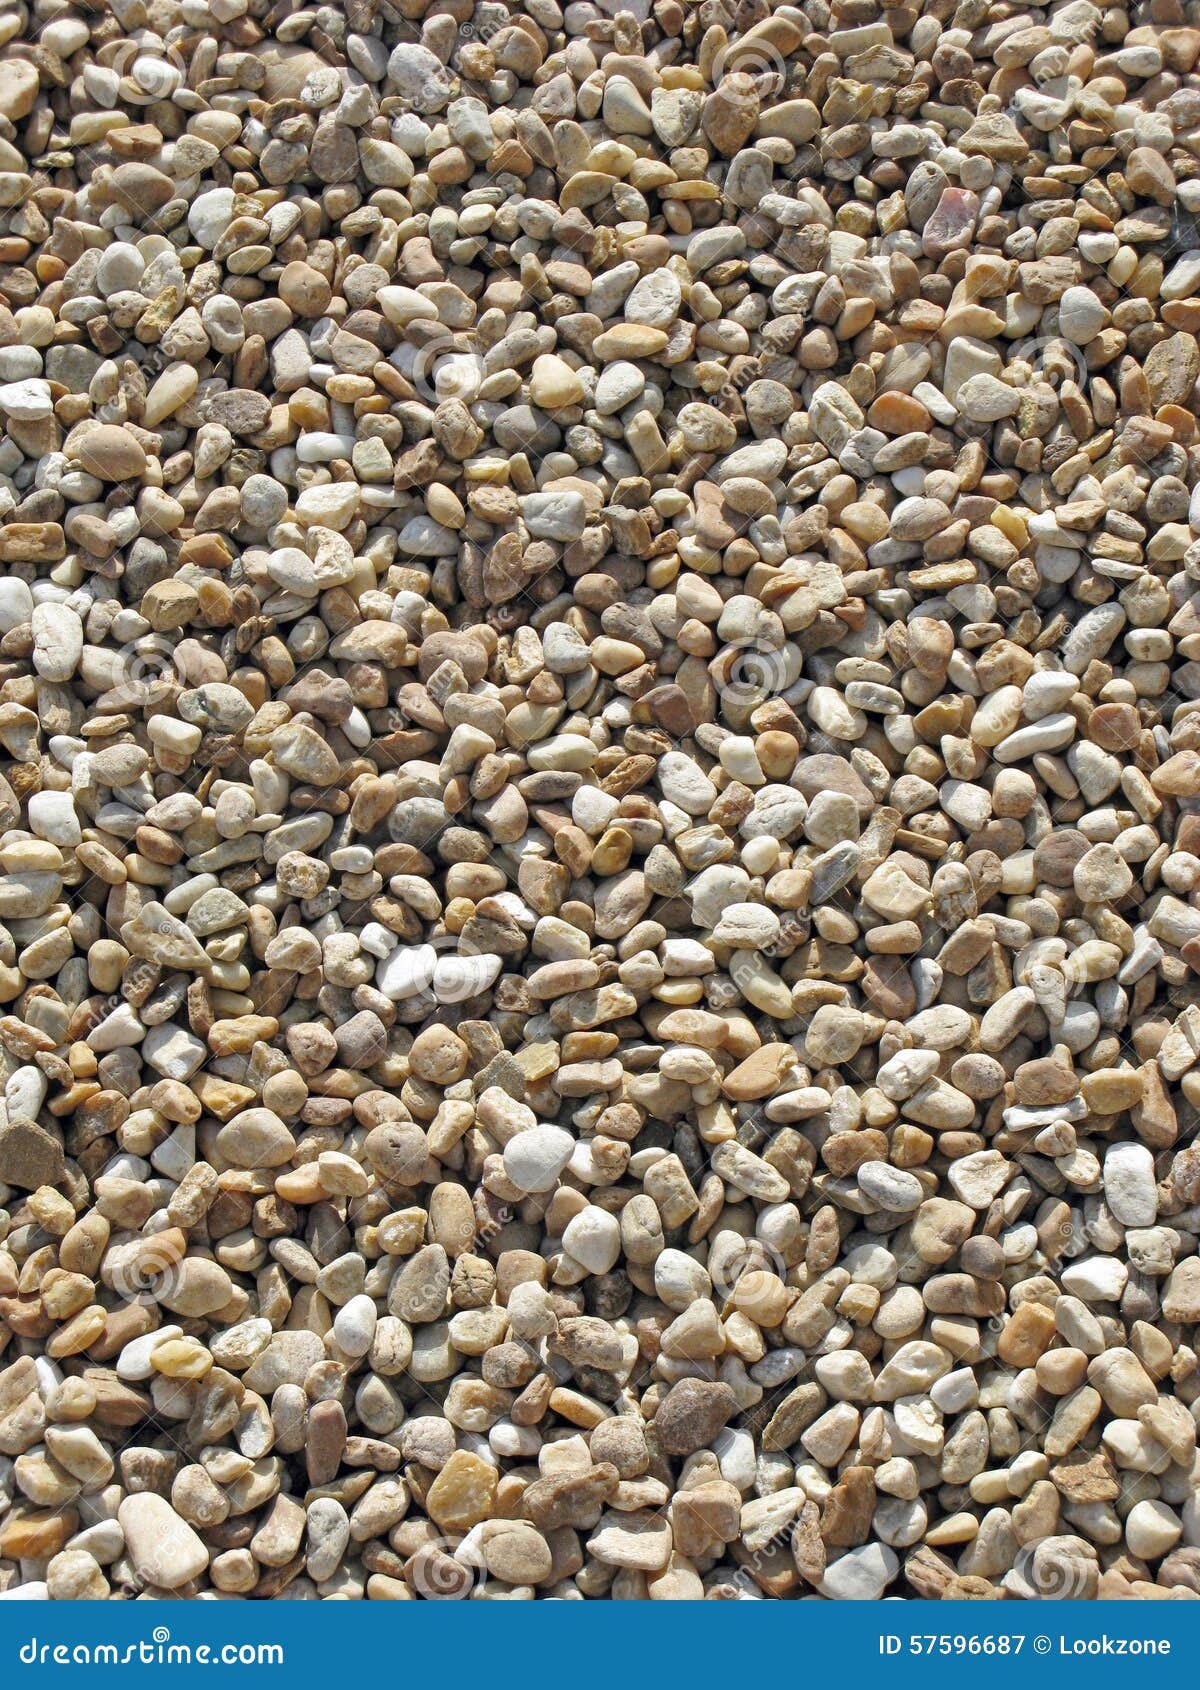 sunlit pebbles